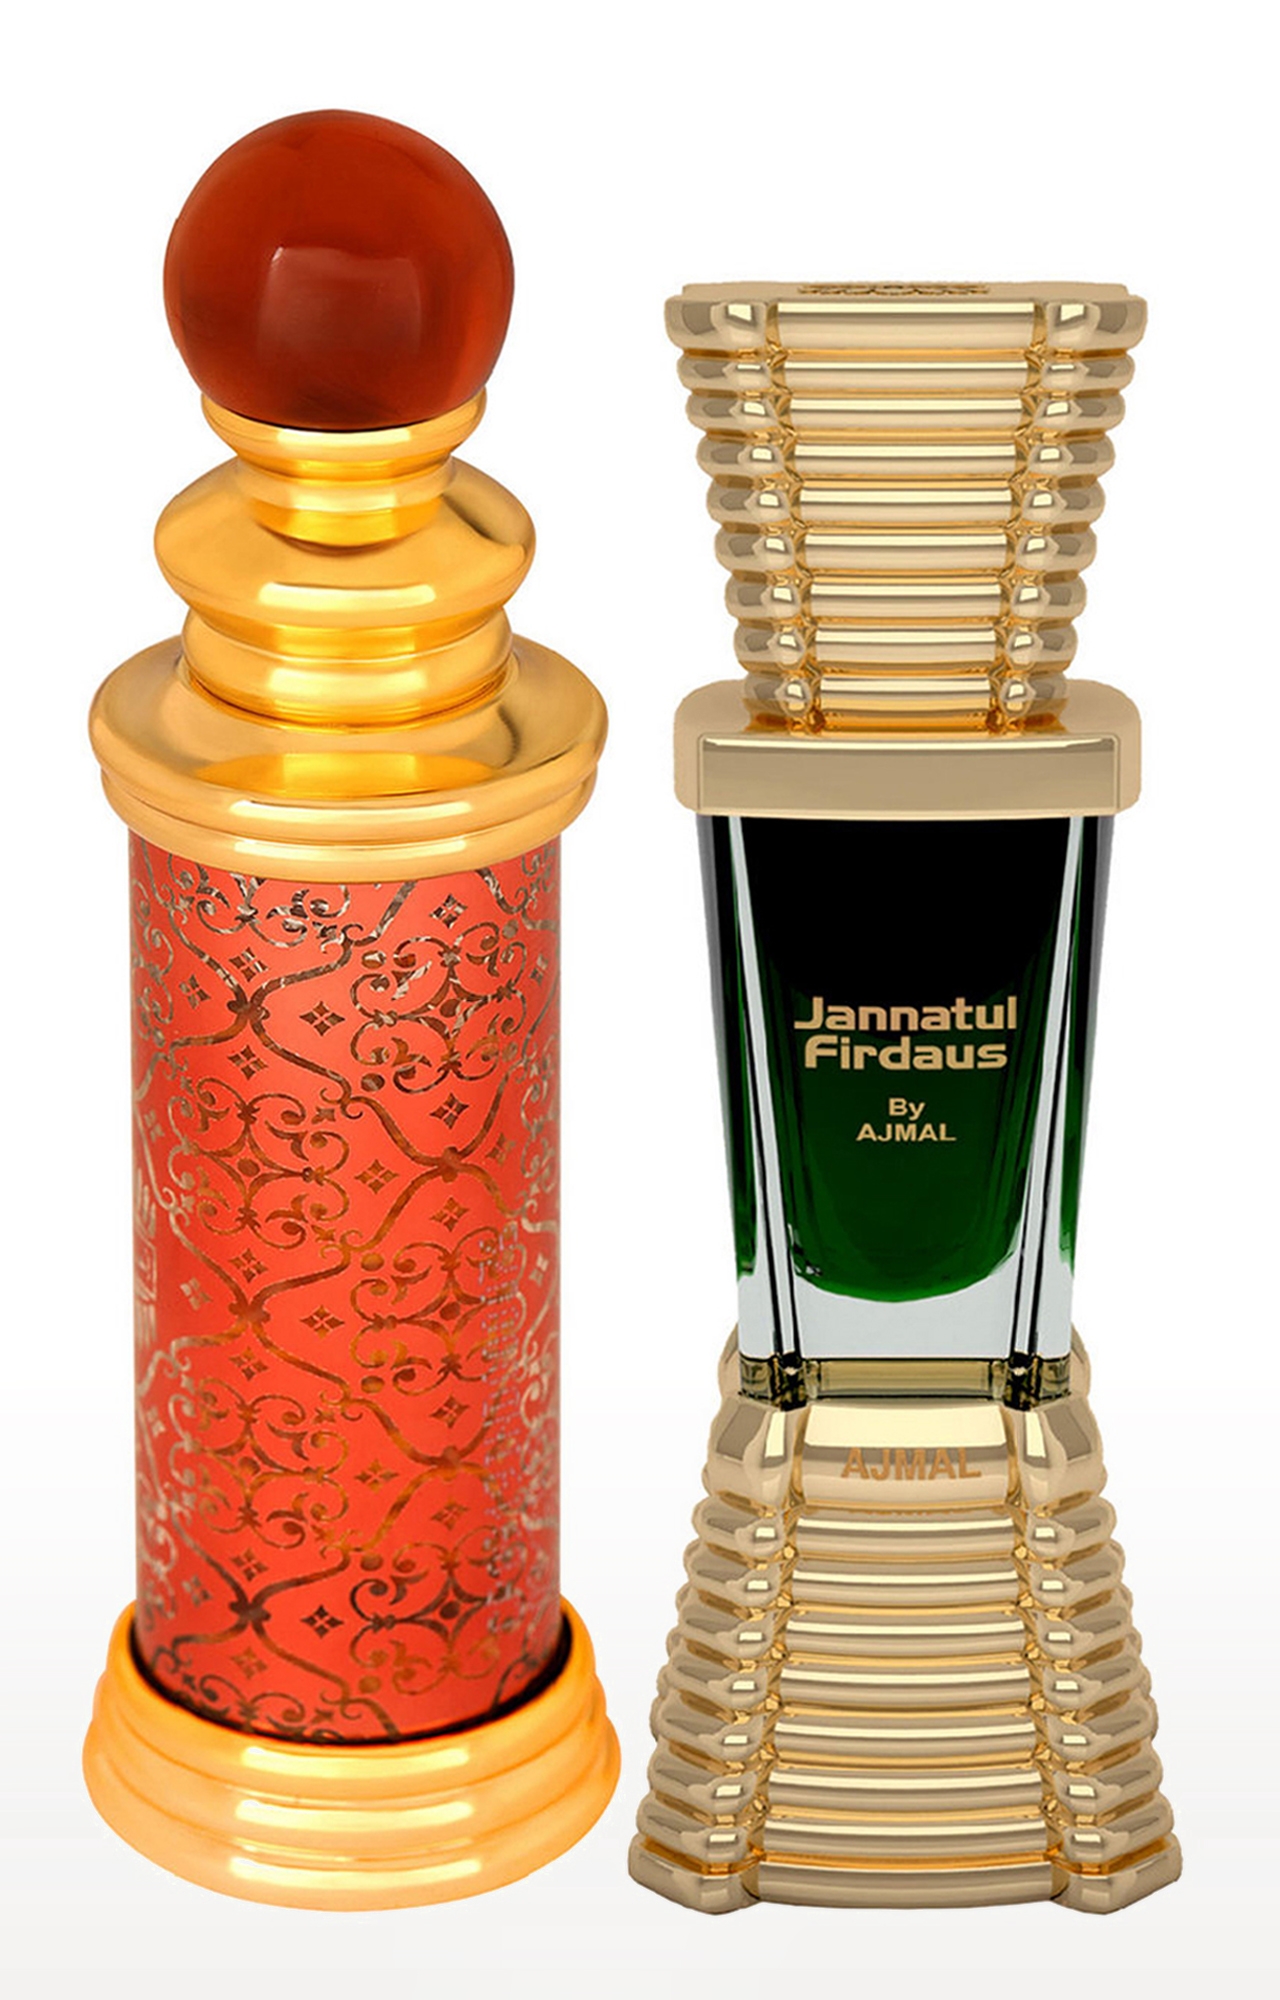 Ajmal | Ajmal Classic Oud Concentrated Perfume Attar 10Ml For Unisex And Jannatul Firdaus Concentrated Perfume Attar 10Ml For Unisex